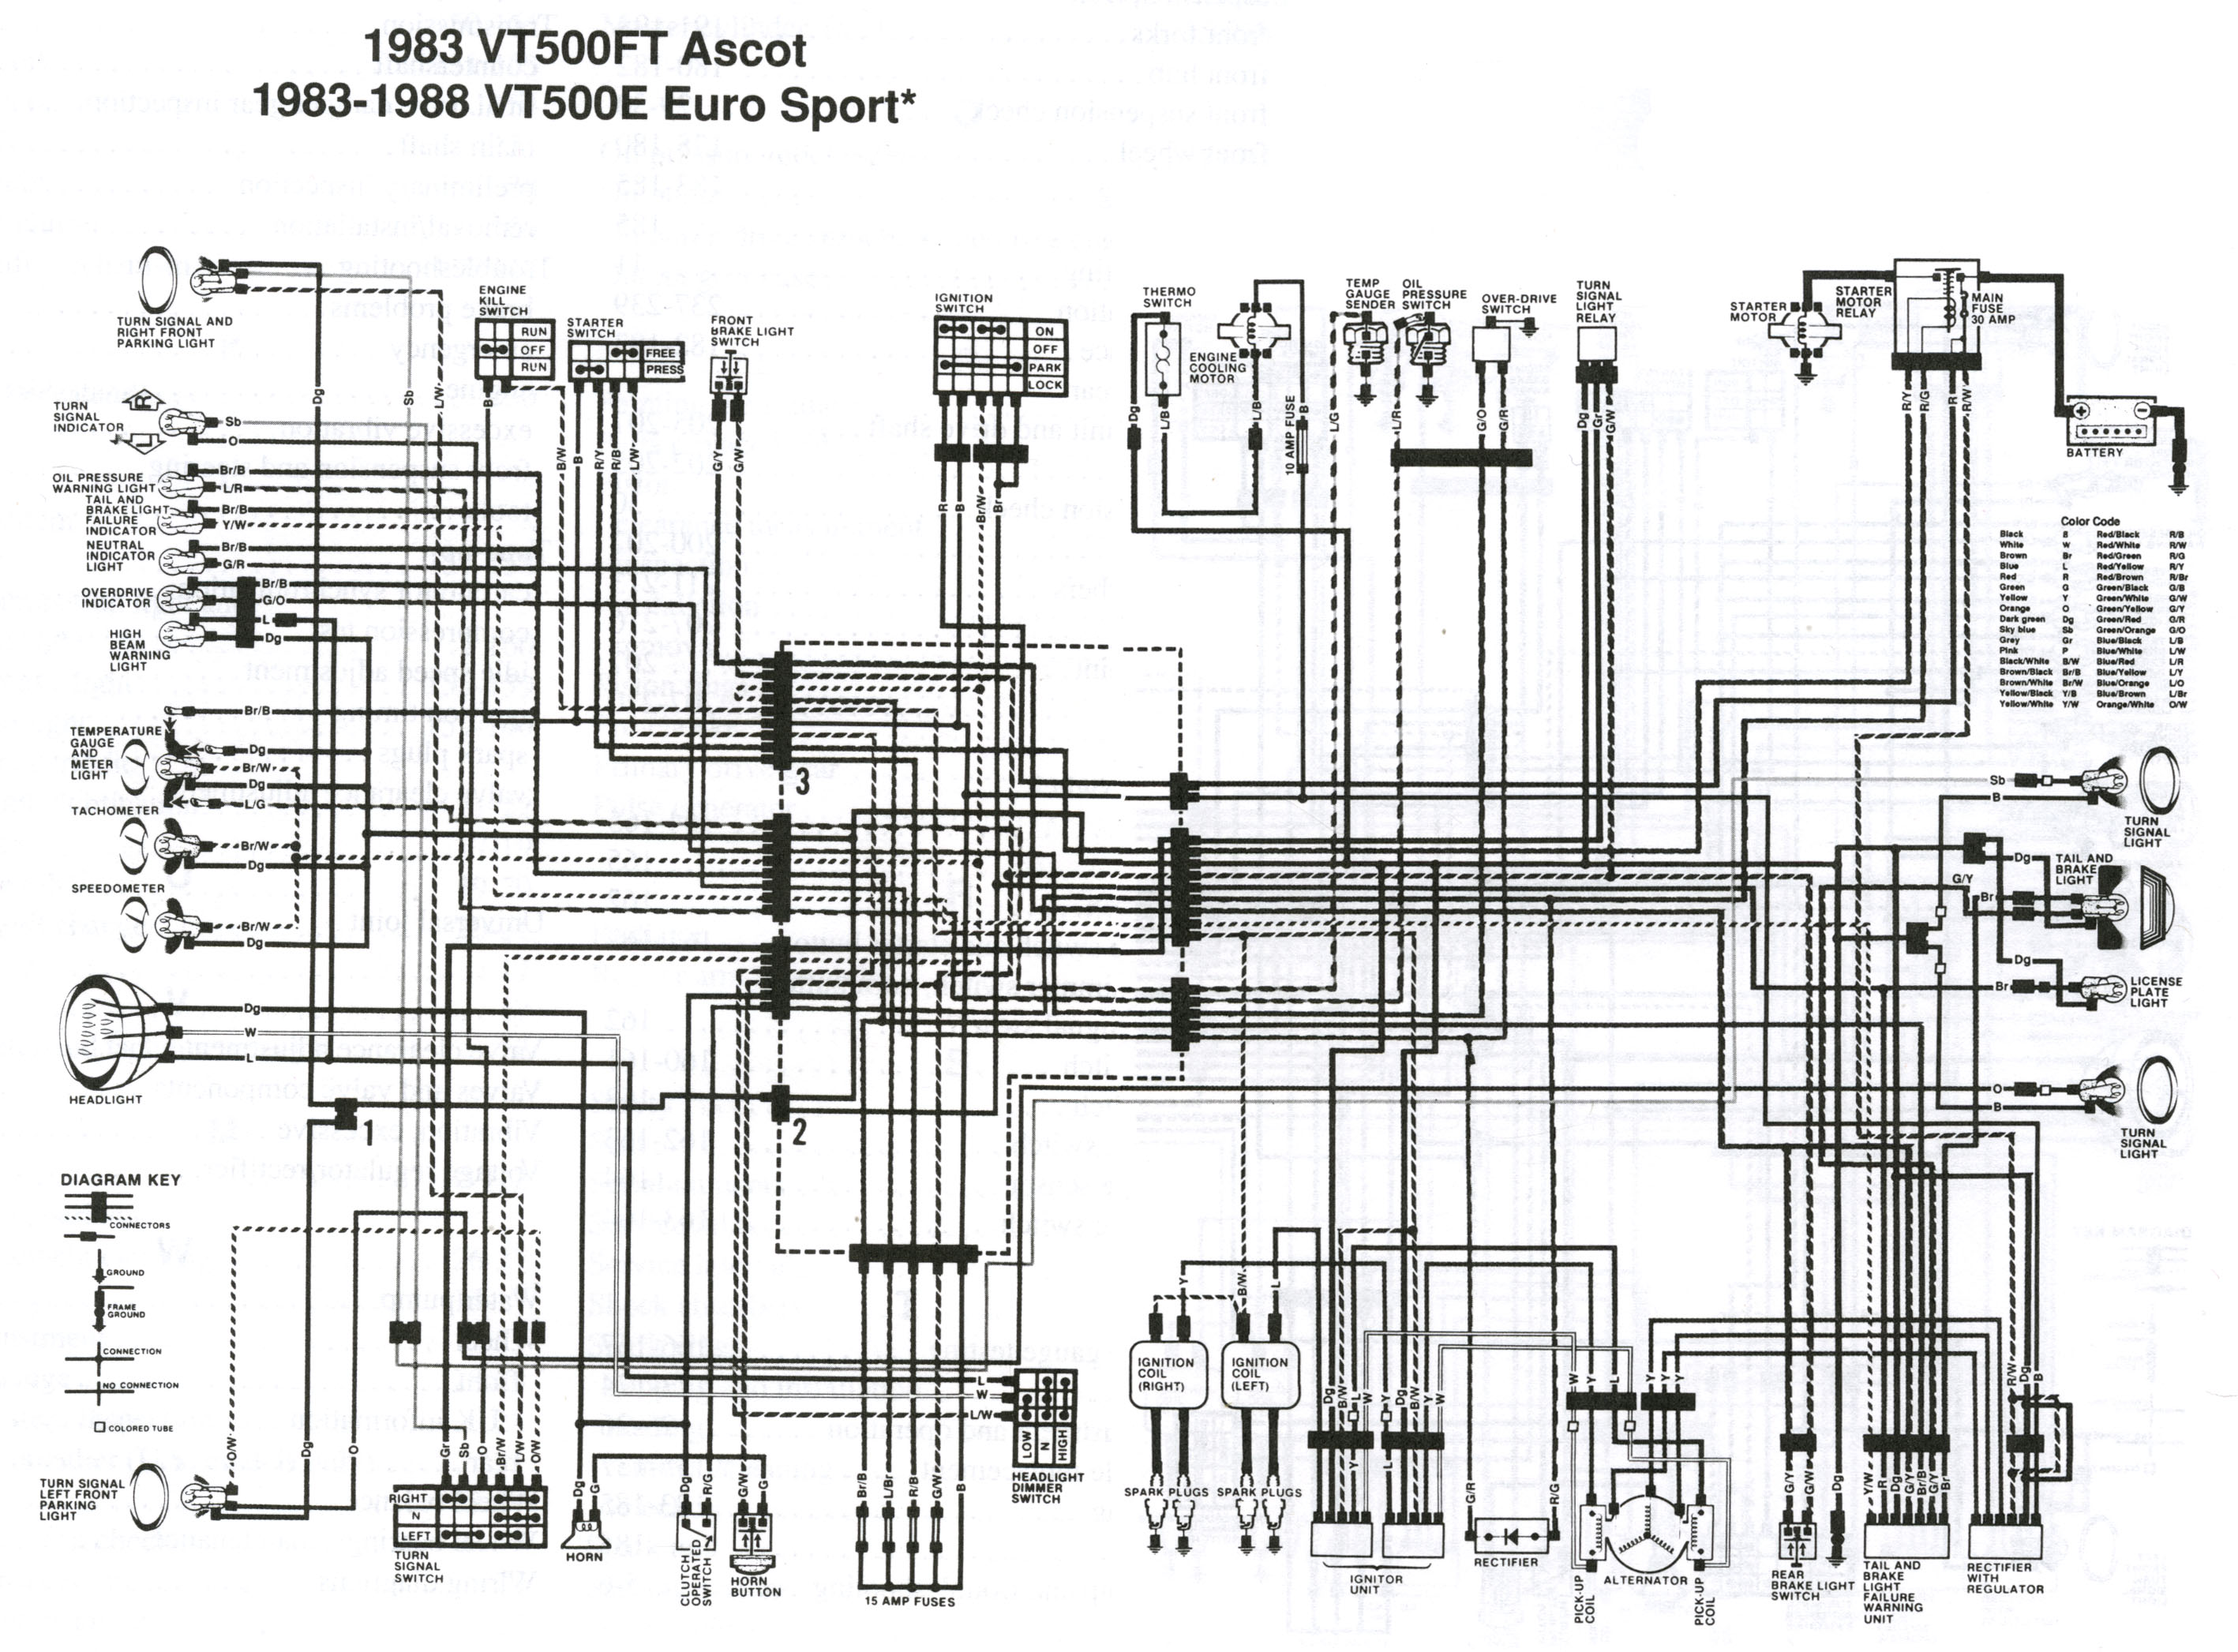 20 Most Recent 1984 Honda vt 500 ft ascot Questions & Answers - Fixya